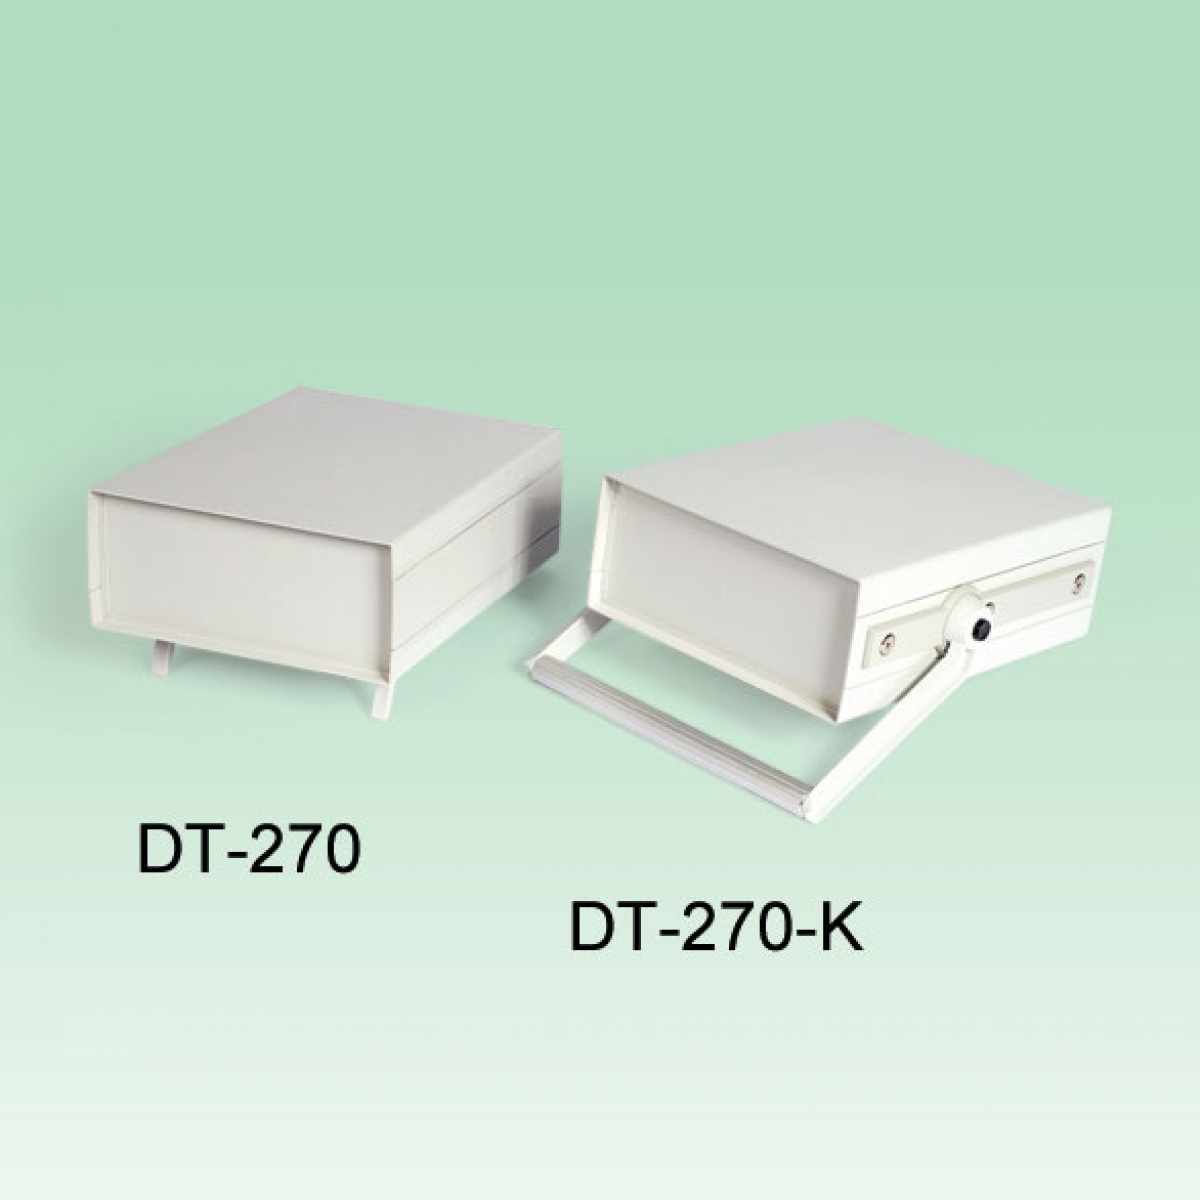 DT-270